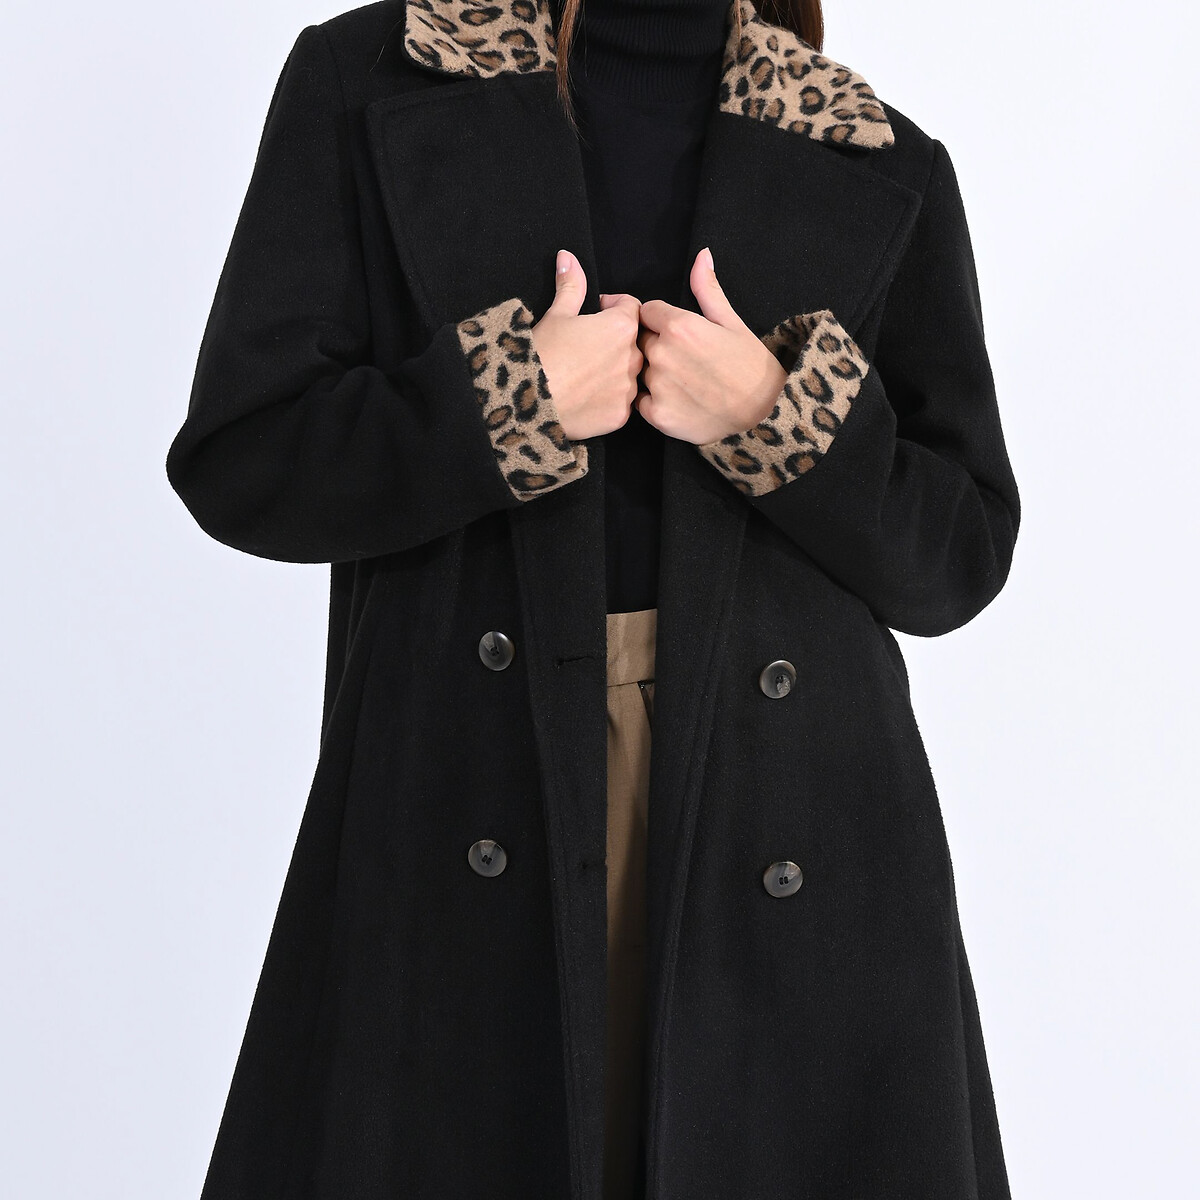 Пальто Длинное на пуговицах вставки с леопардовым принтом M черный LaRedoute, размер M - фото 2